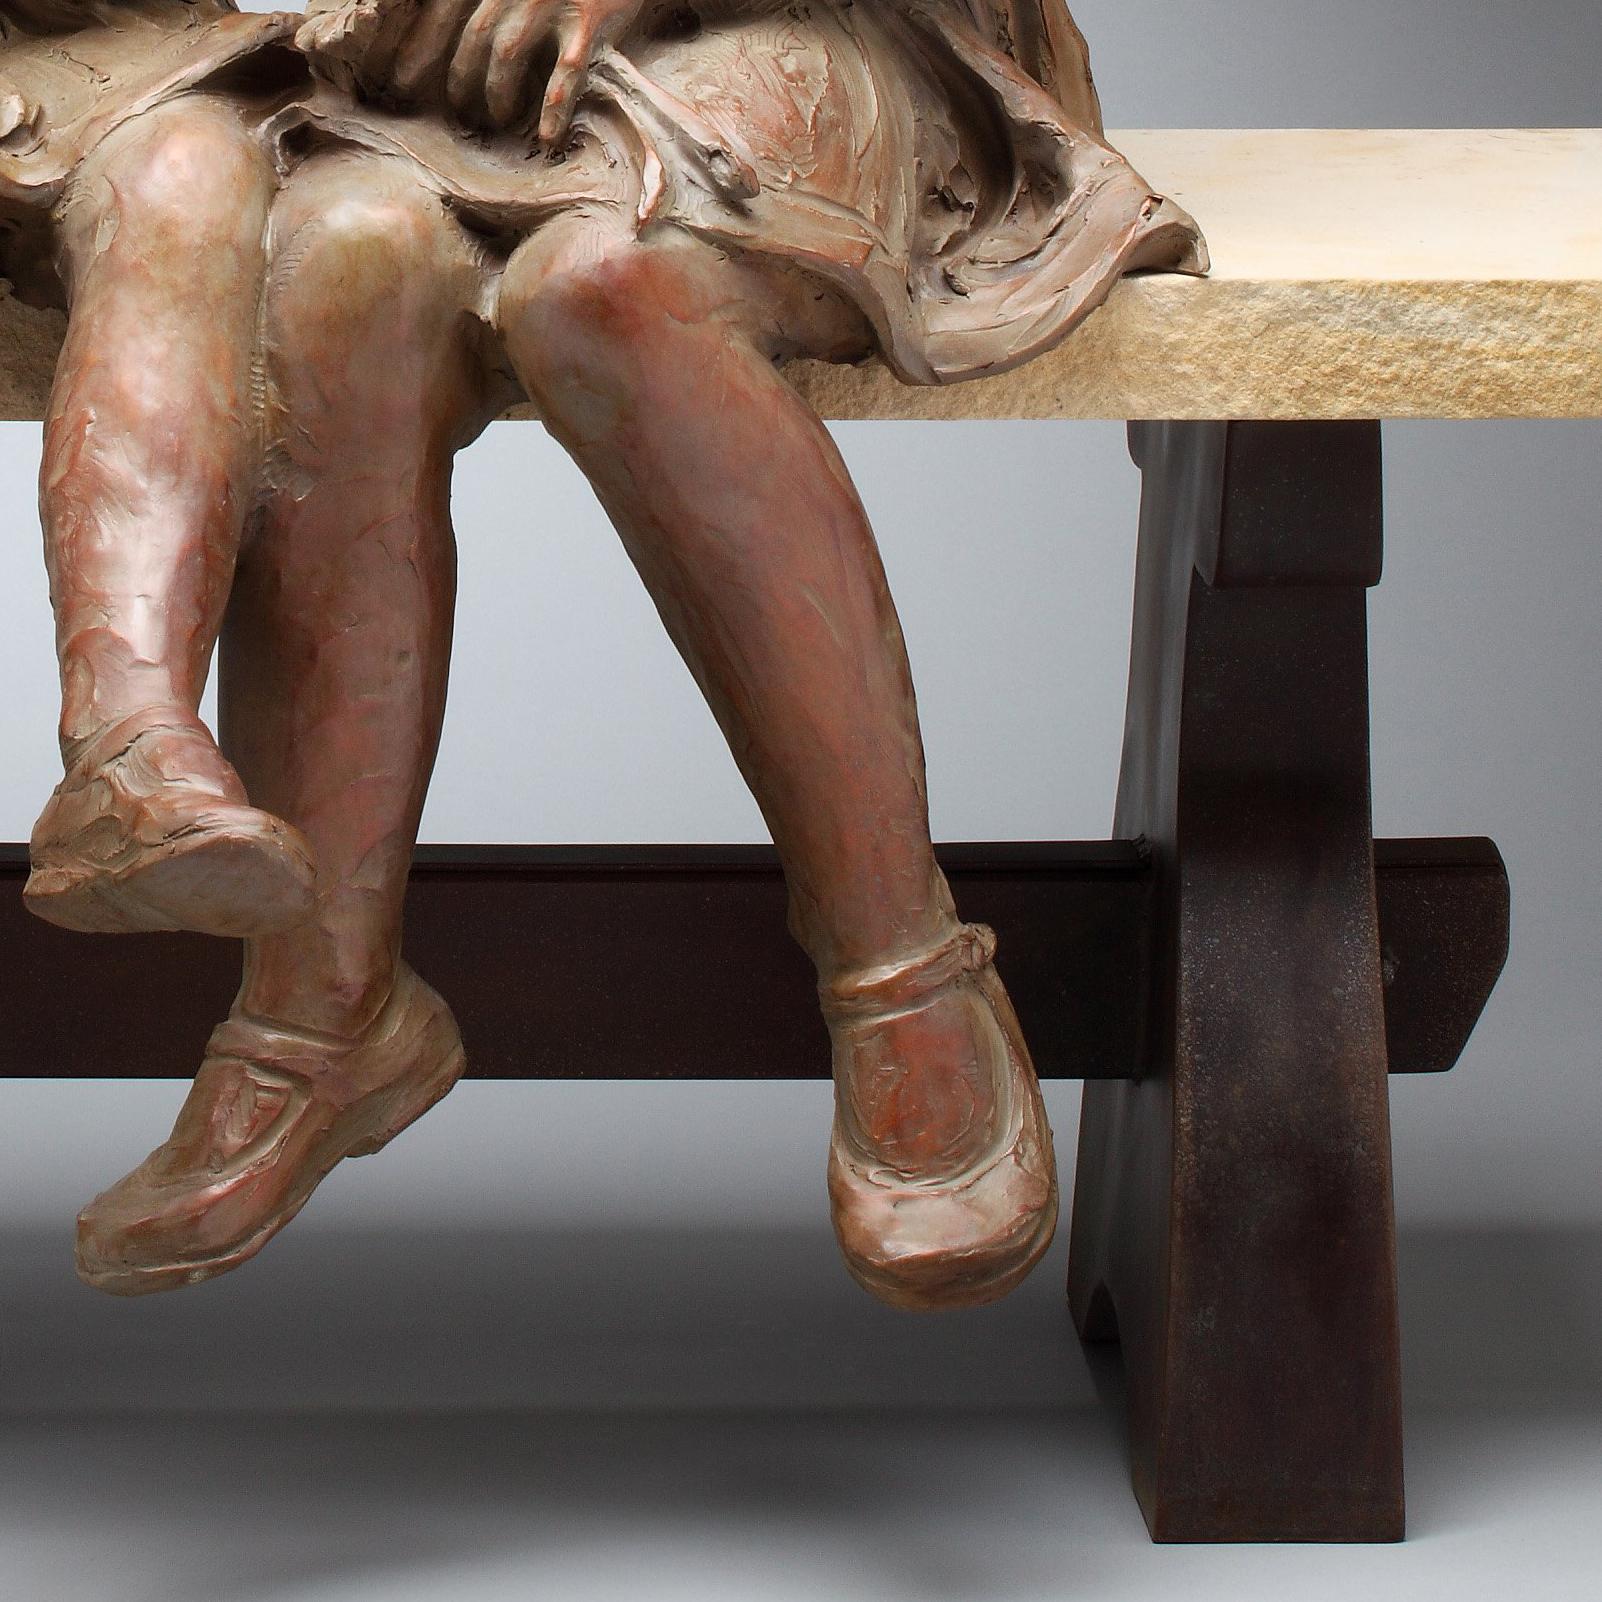 Sculpture de deux filles assises sur un banc.

Edition de 31